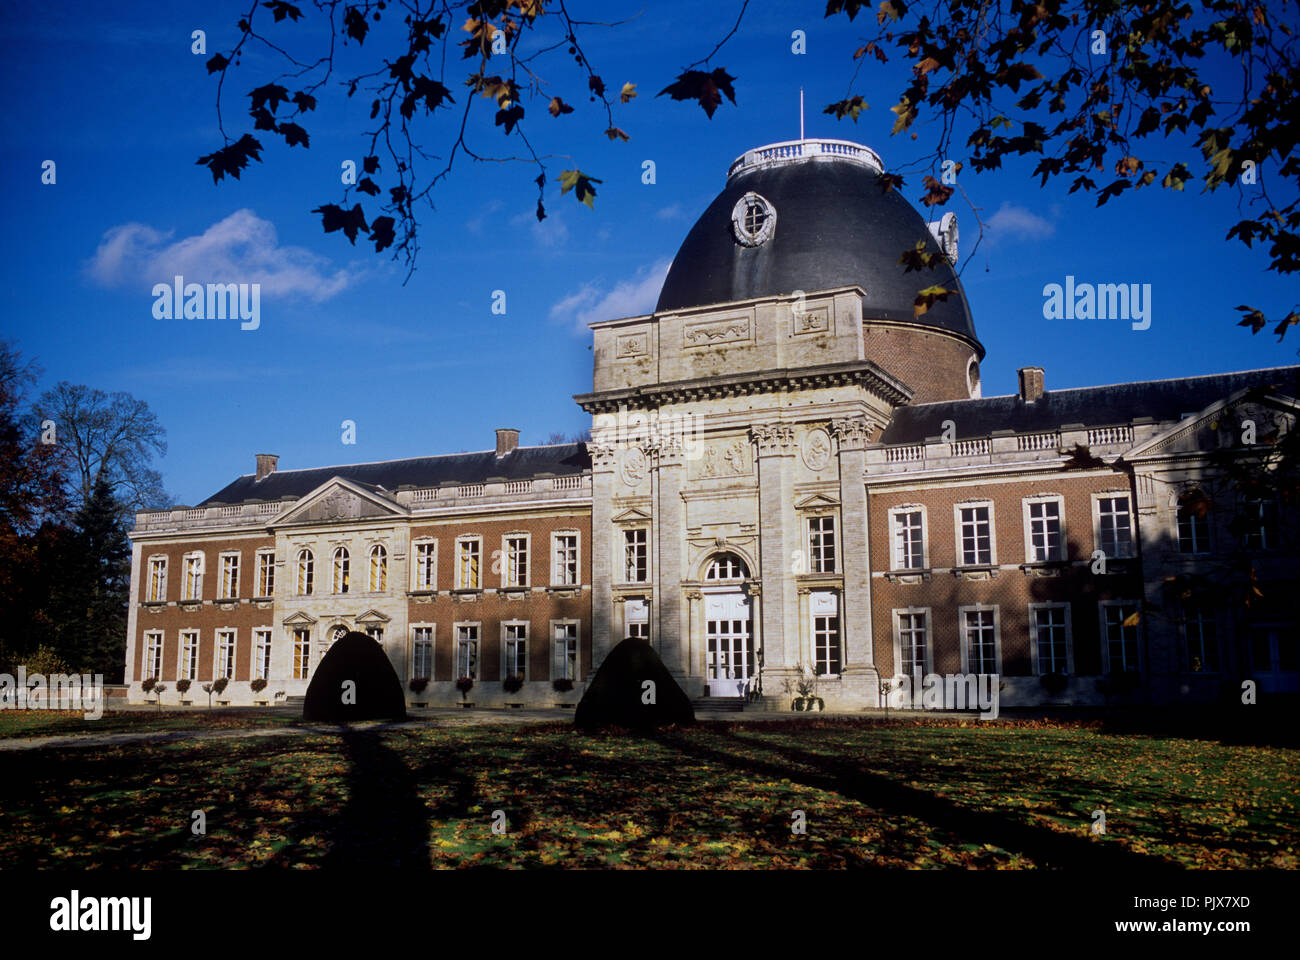 The Hélécine Provincial Park and its 18th Century castle (Belgium, 08/11/2008) Stock Photo